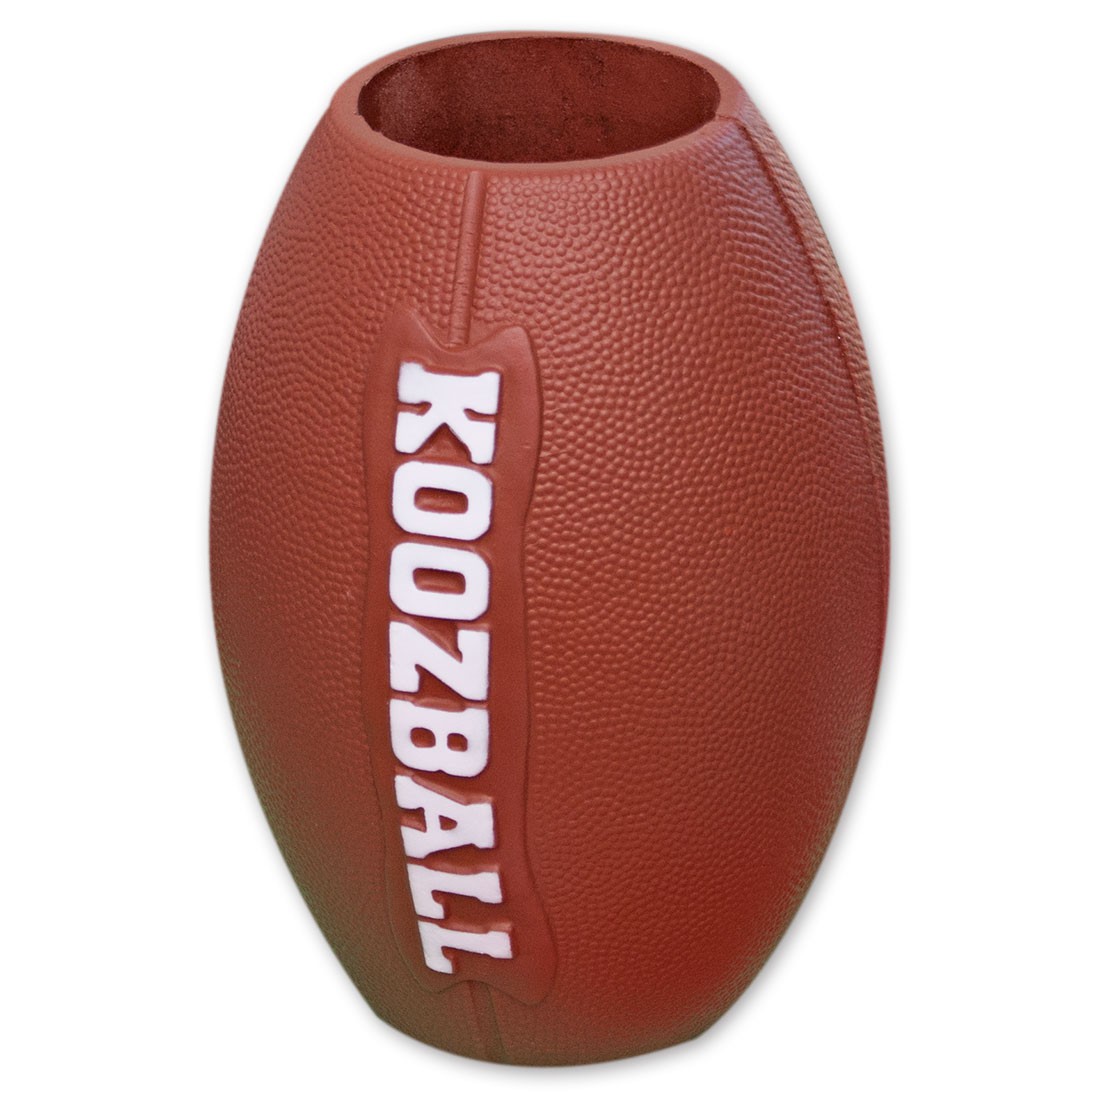 'Koozball' Football Can Cooler